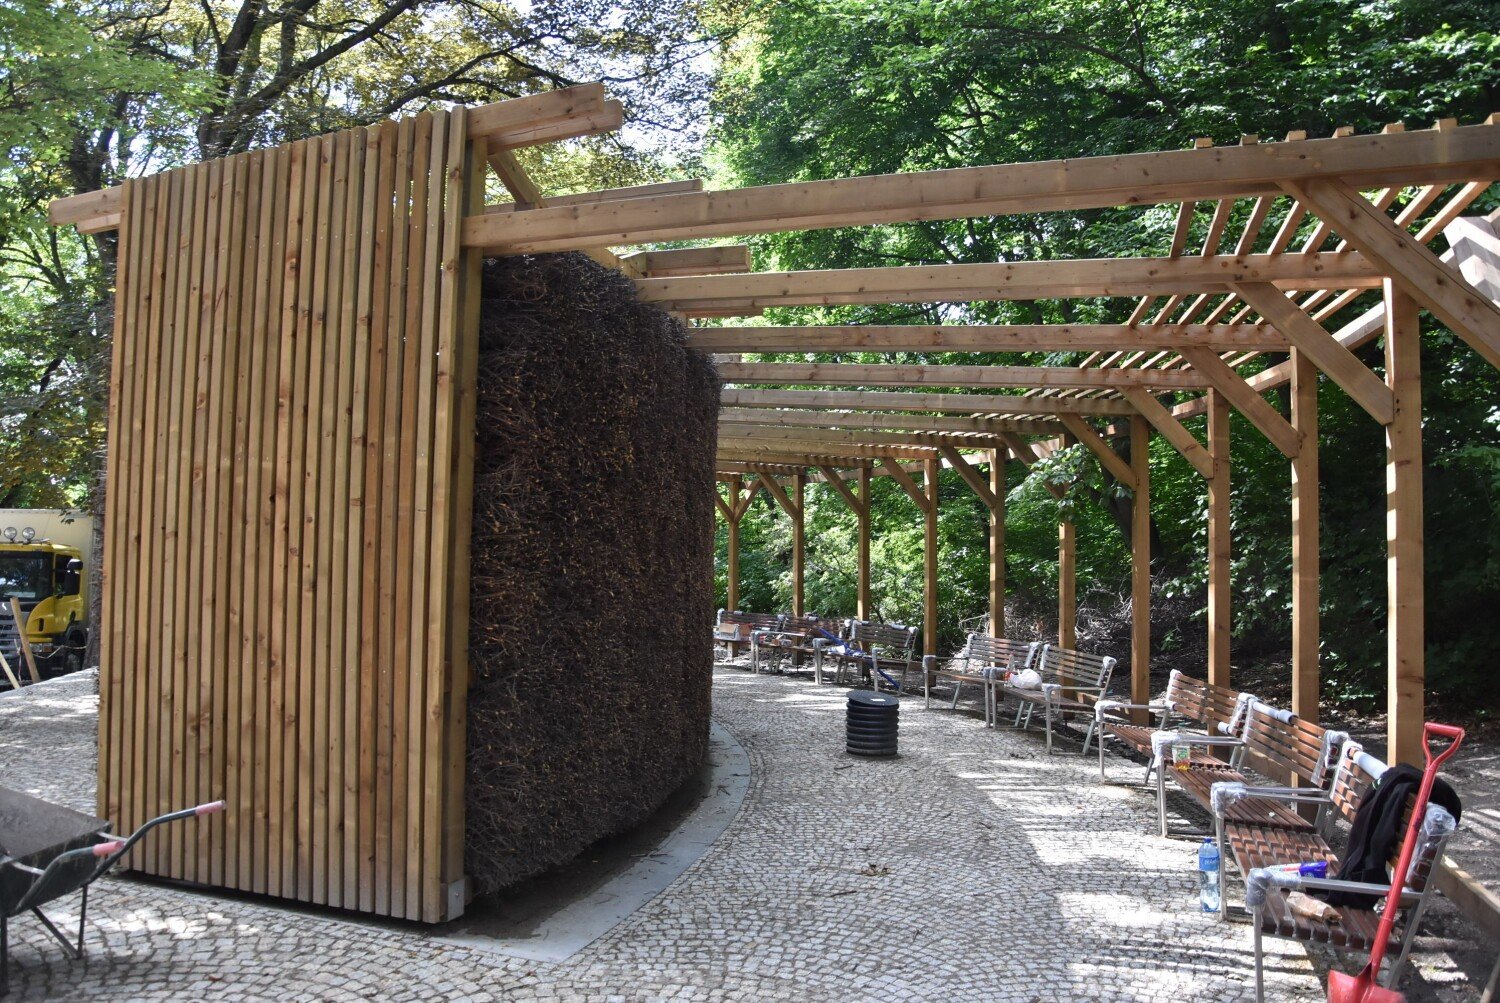 Tężnia solankowa w Parku Sobieskiego jest już prawie ukończona